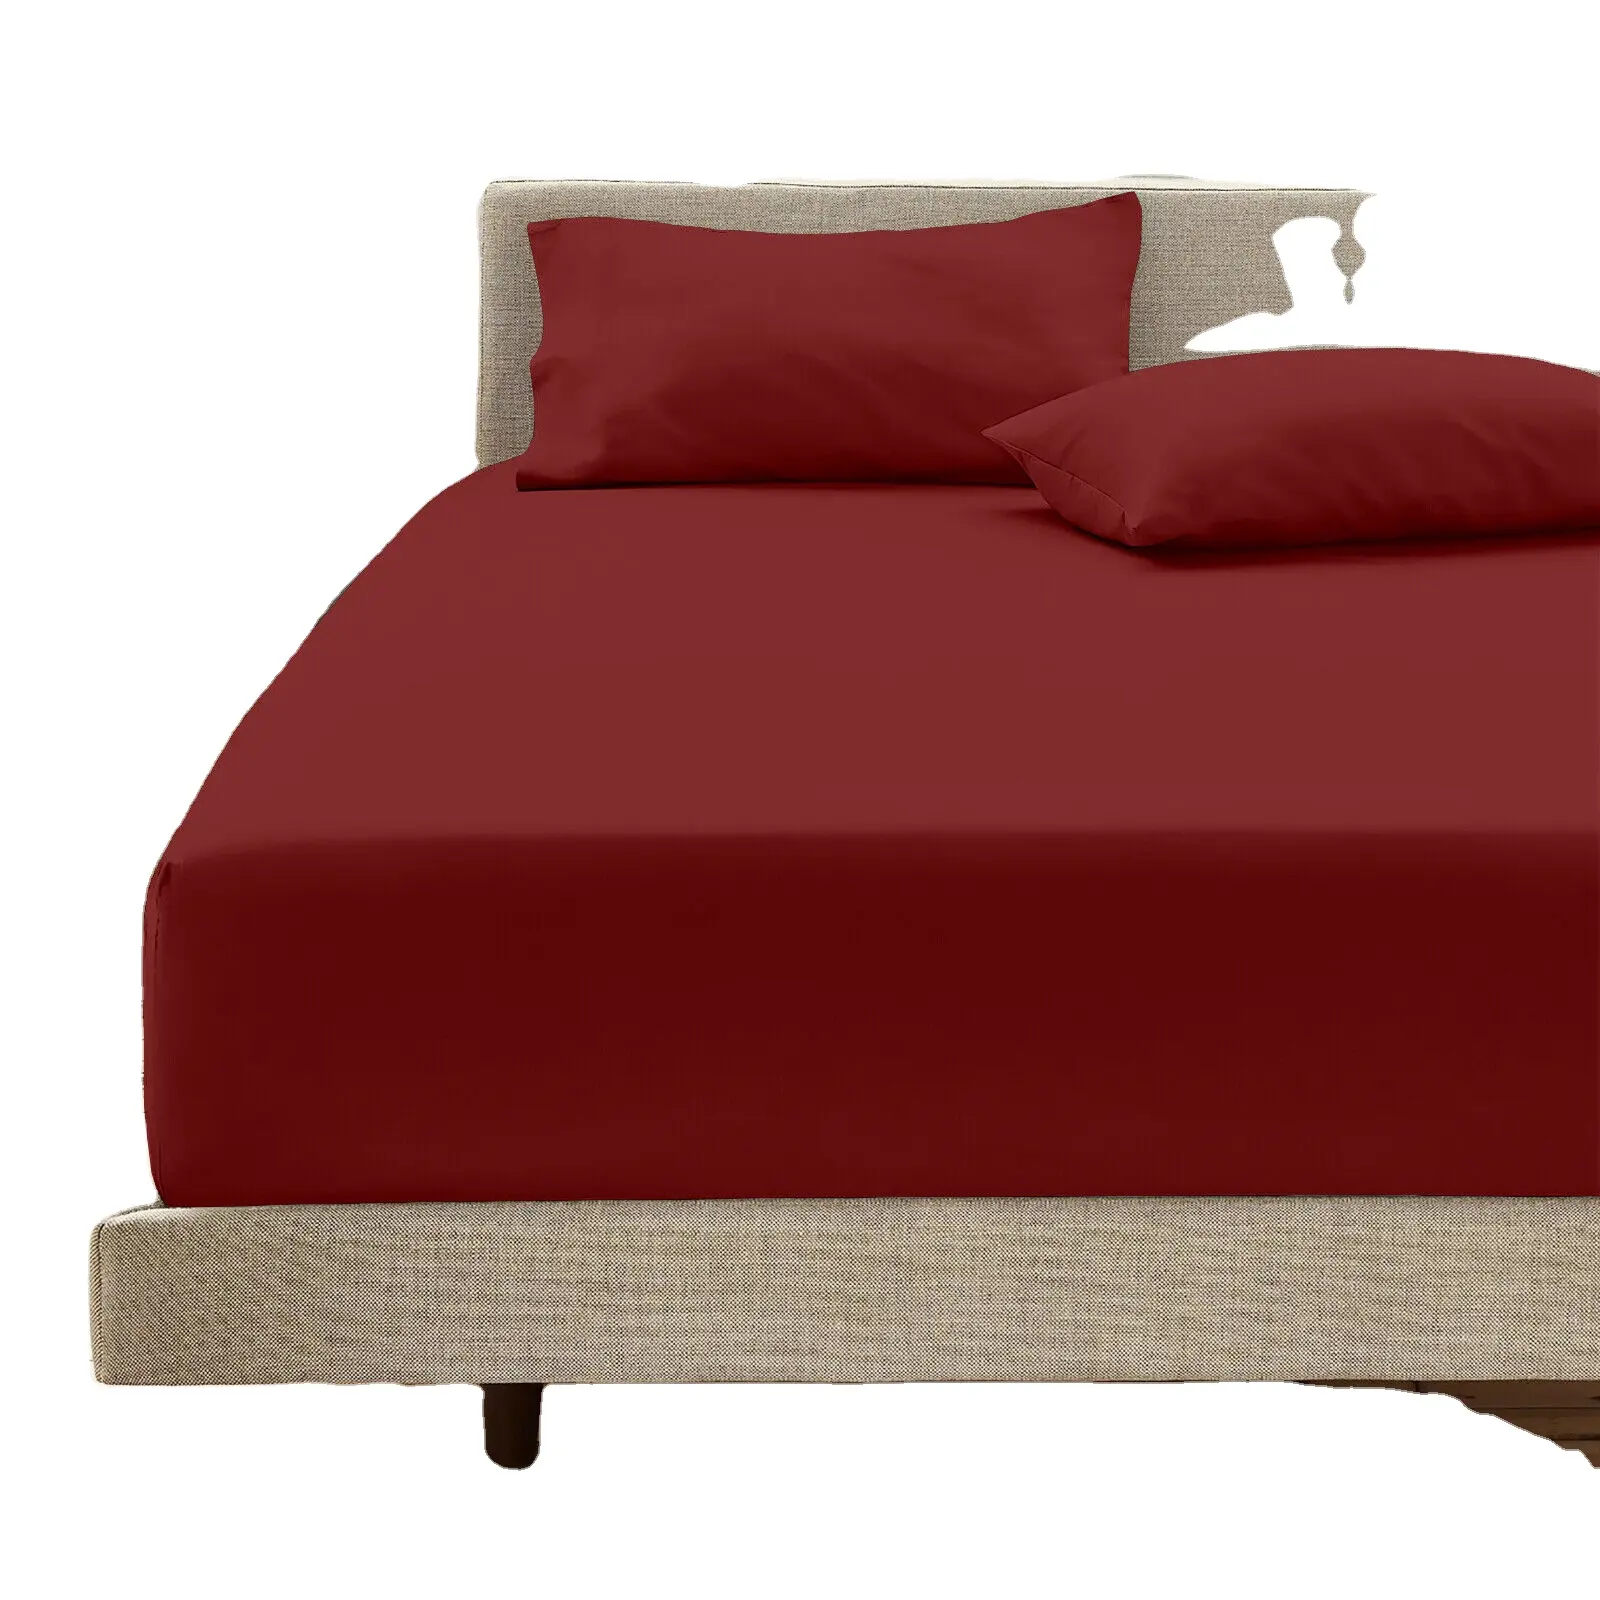 ชุดผ้าปูที่นอนน้ำหนักเบาสำหรับใช้ในบ้านโรงแรม2023 OEM ออกแบบโลโก้ได้ตามต้องการ